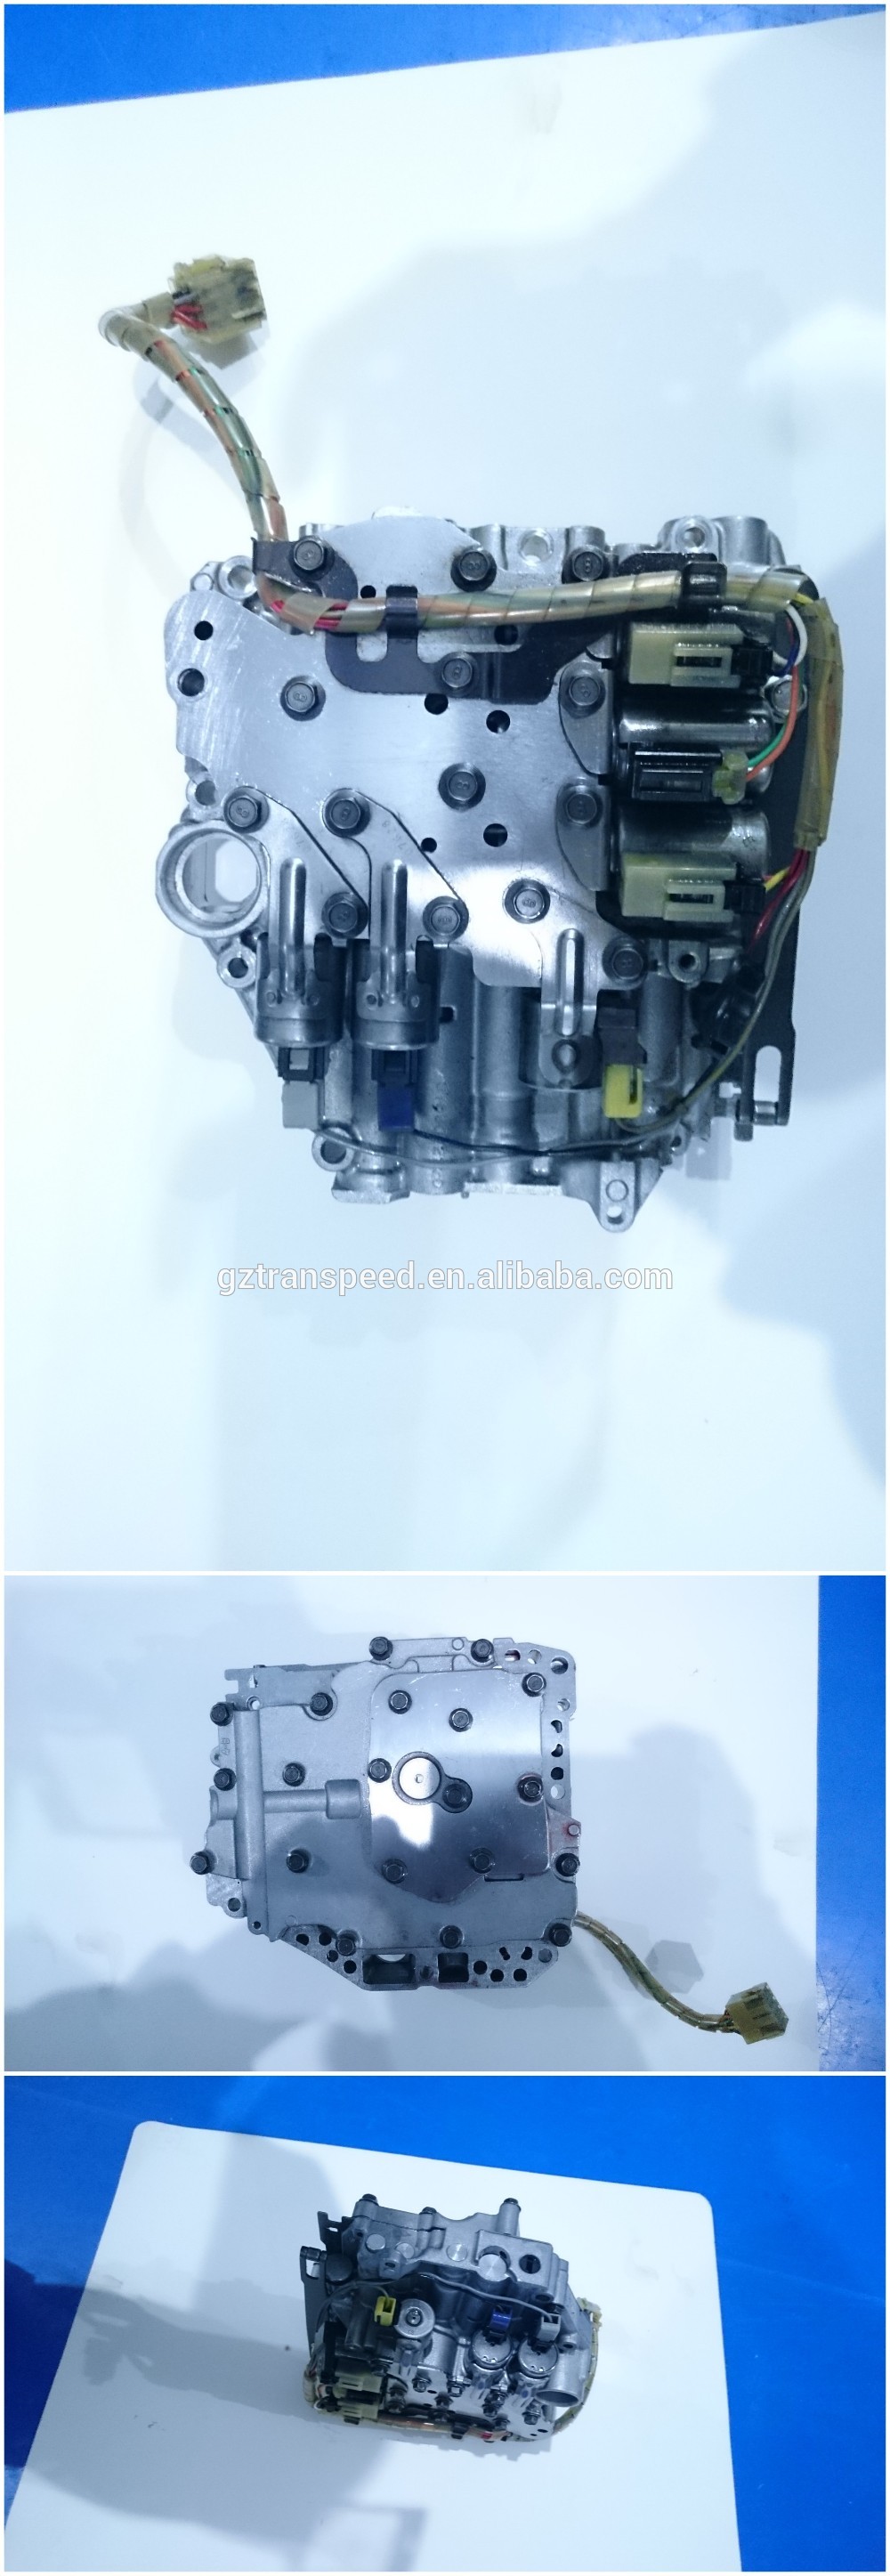 u540 auto transmission valve body